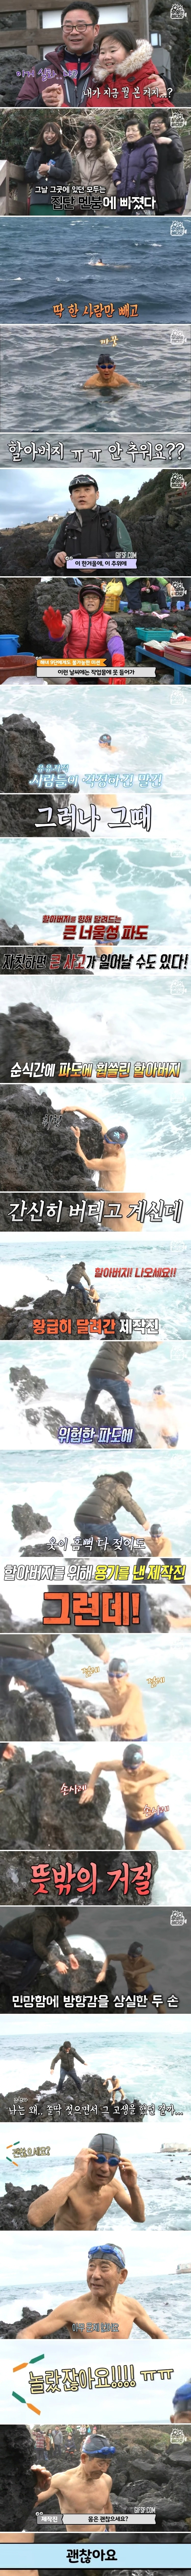 엄동설한 바다수영 고수, 83세 용두암 마린보이 할아버지 (1).jpg